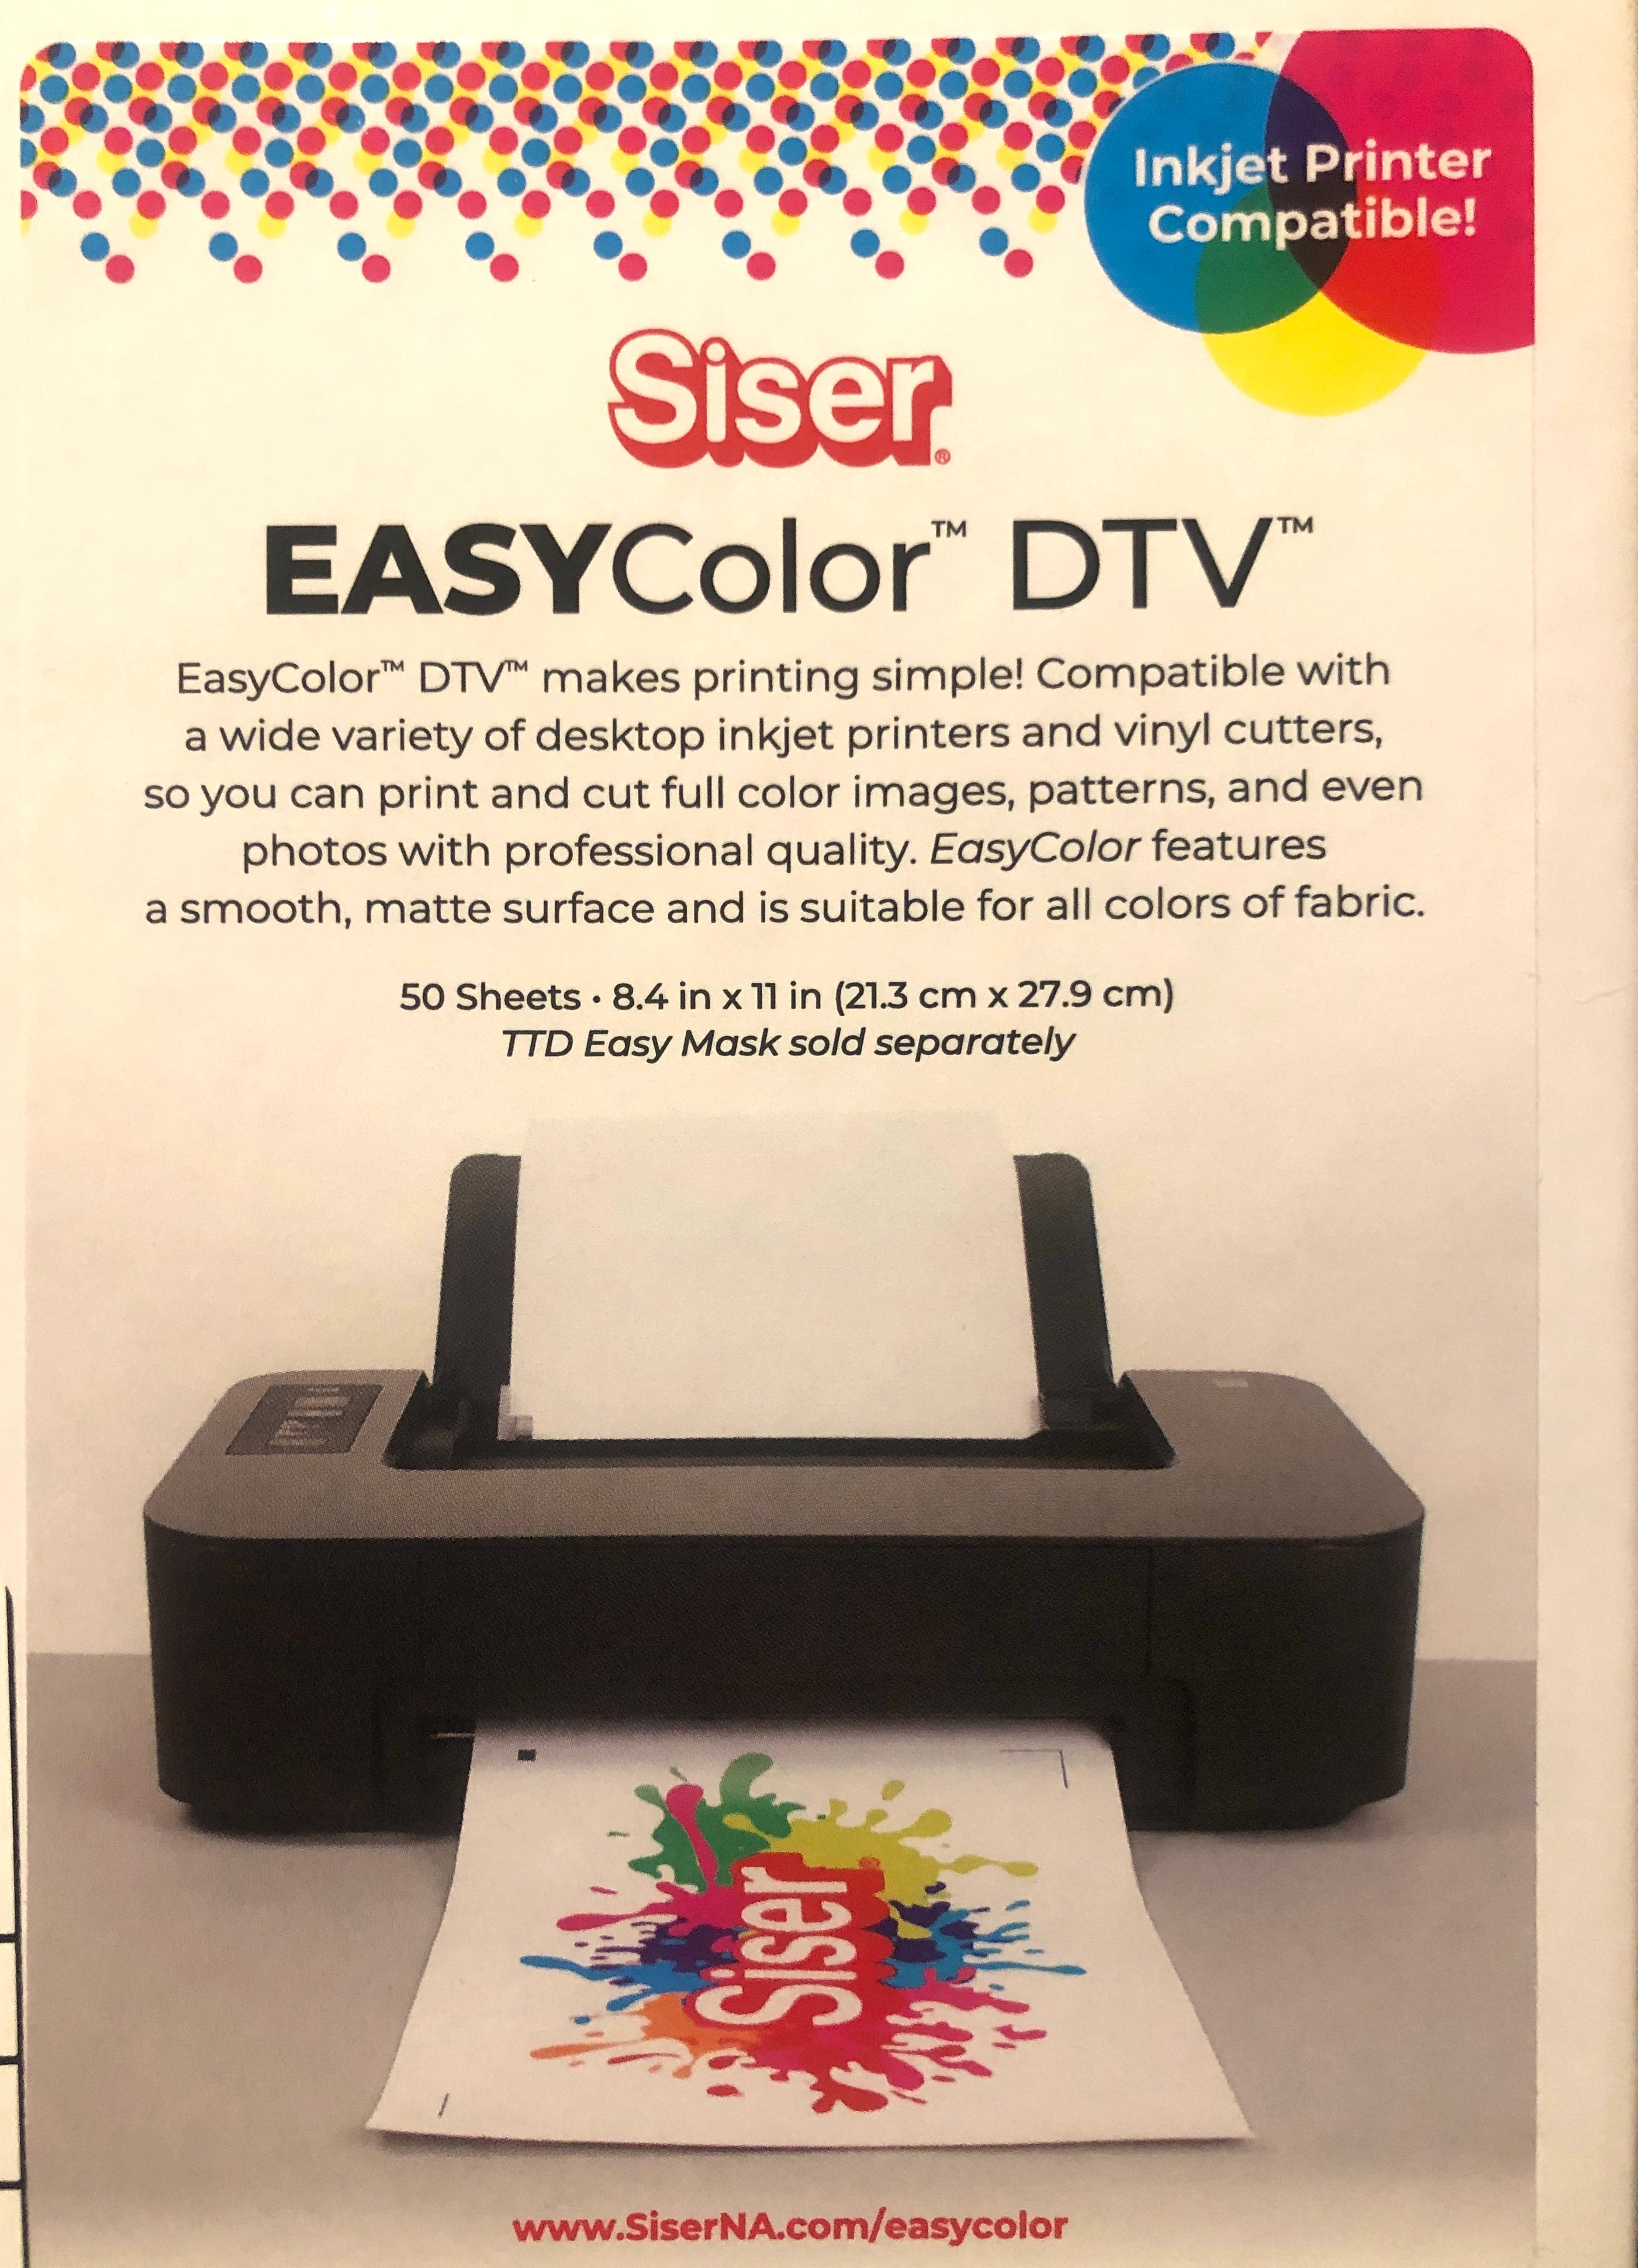 Siser EasyColor DTV